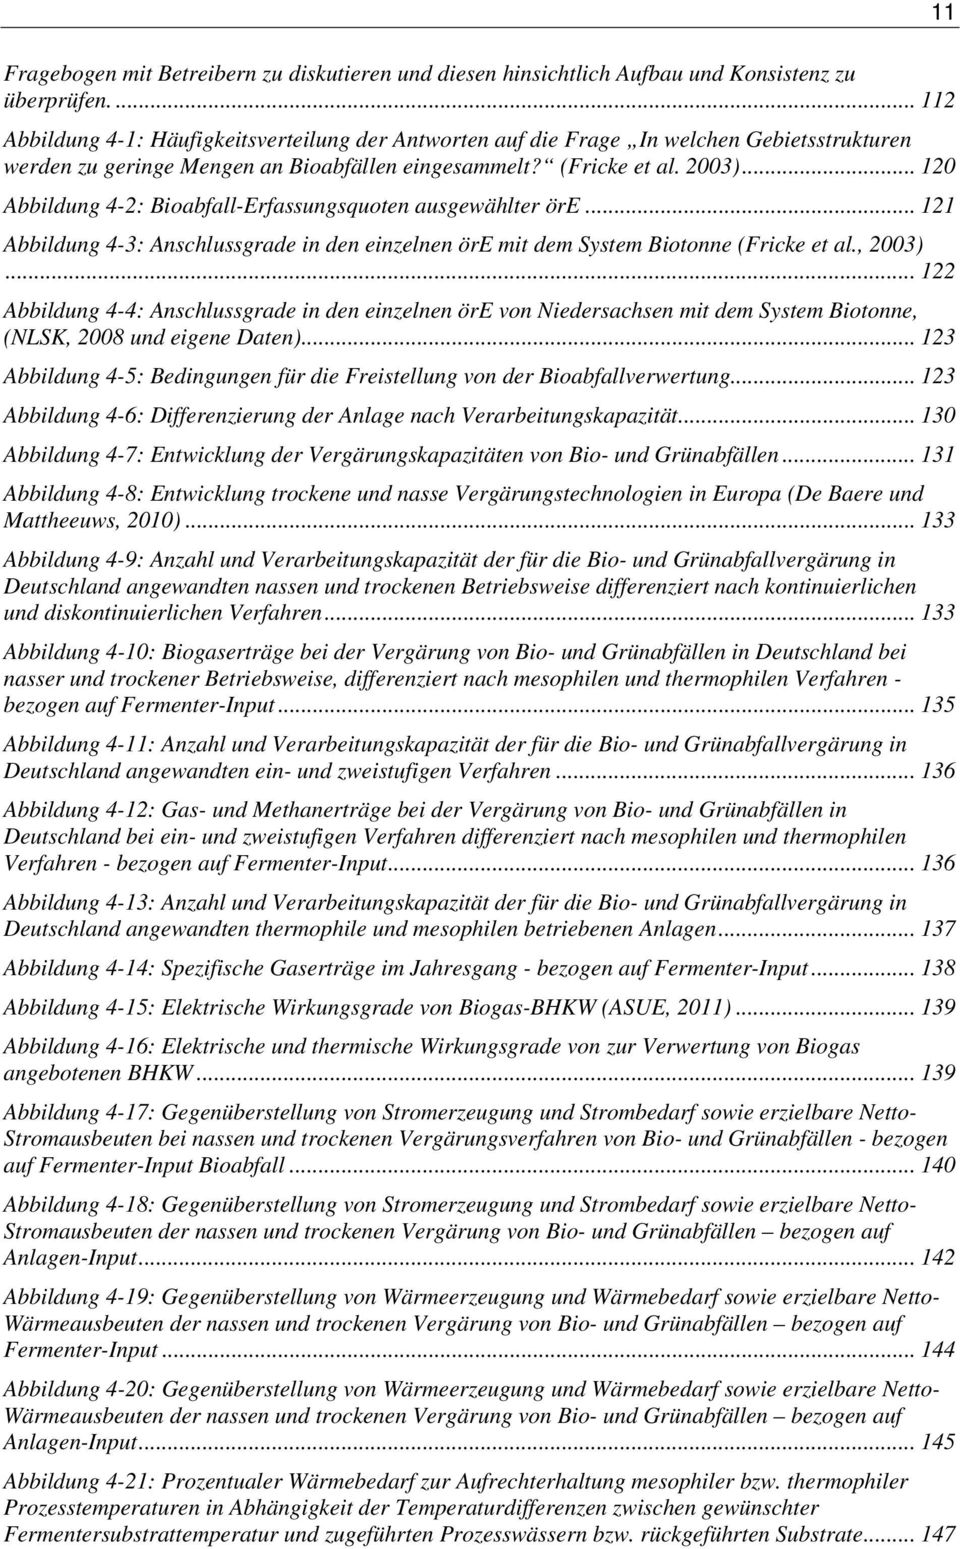 .. 120 Abbildung 4-2: Bioabfall-Erfassungsquoten ausgewählter öre... 121 Abbildung 4-3: Anschlussgrade in den einzelnen öre mit dem System Biotonne (Fricke et al., 2003).